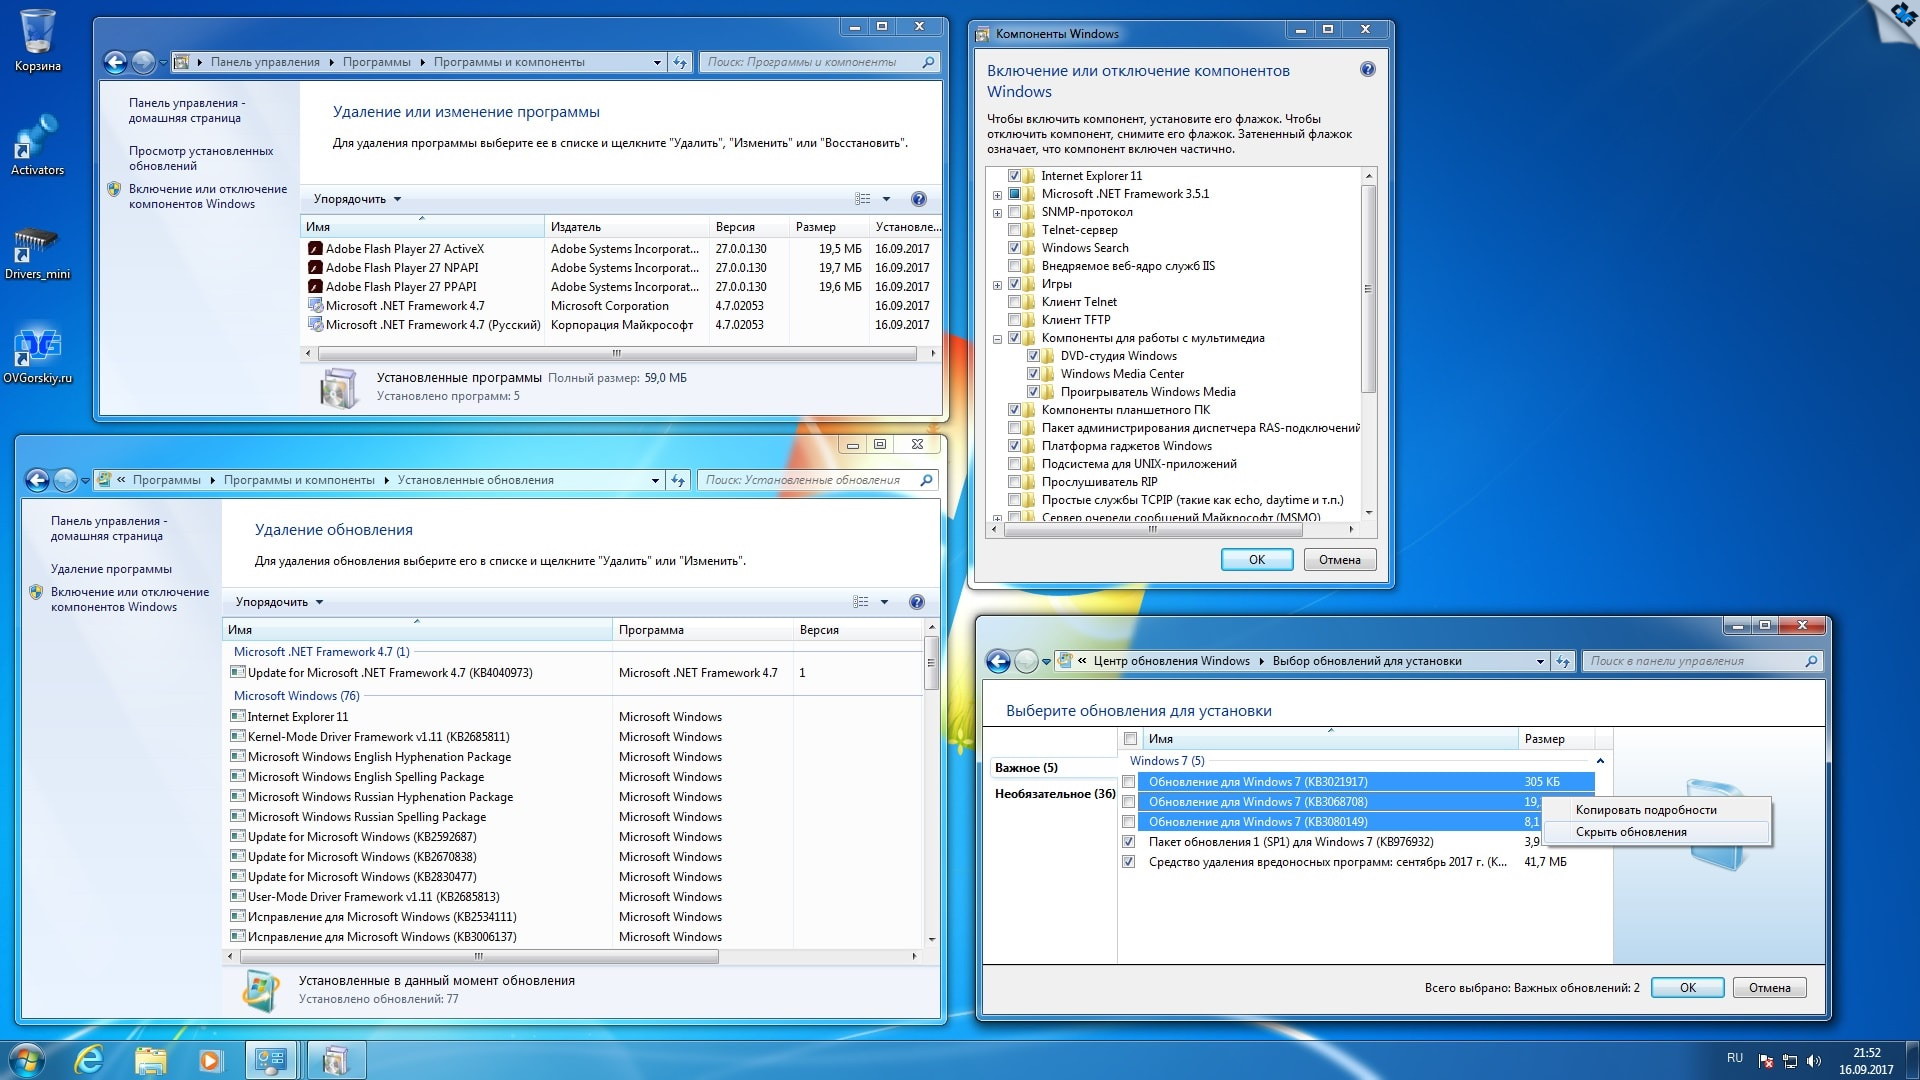 Kb2670838 x64. Windows 7 Ultimate sp1 x64 OVGORSKIY. Работа с обновлениями Windows. Программы и компоненты на английском Windows. Окно торрента.